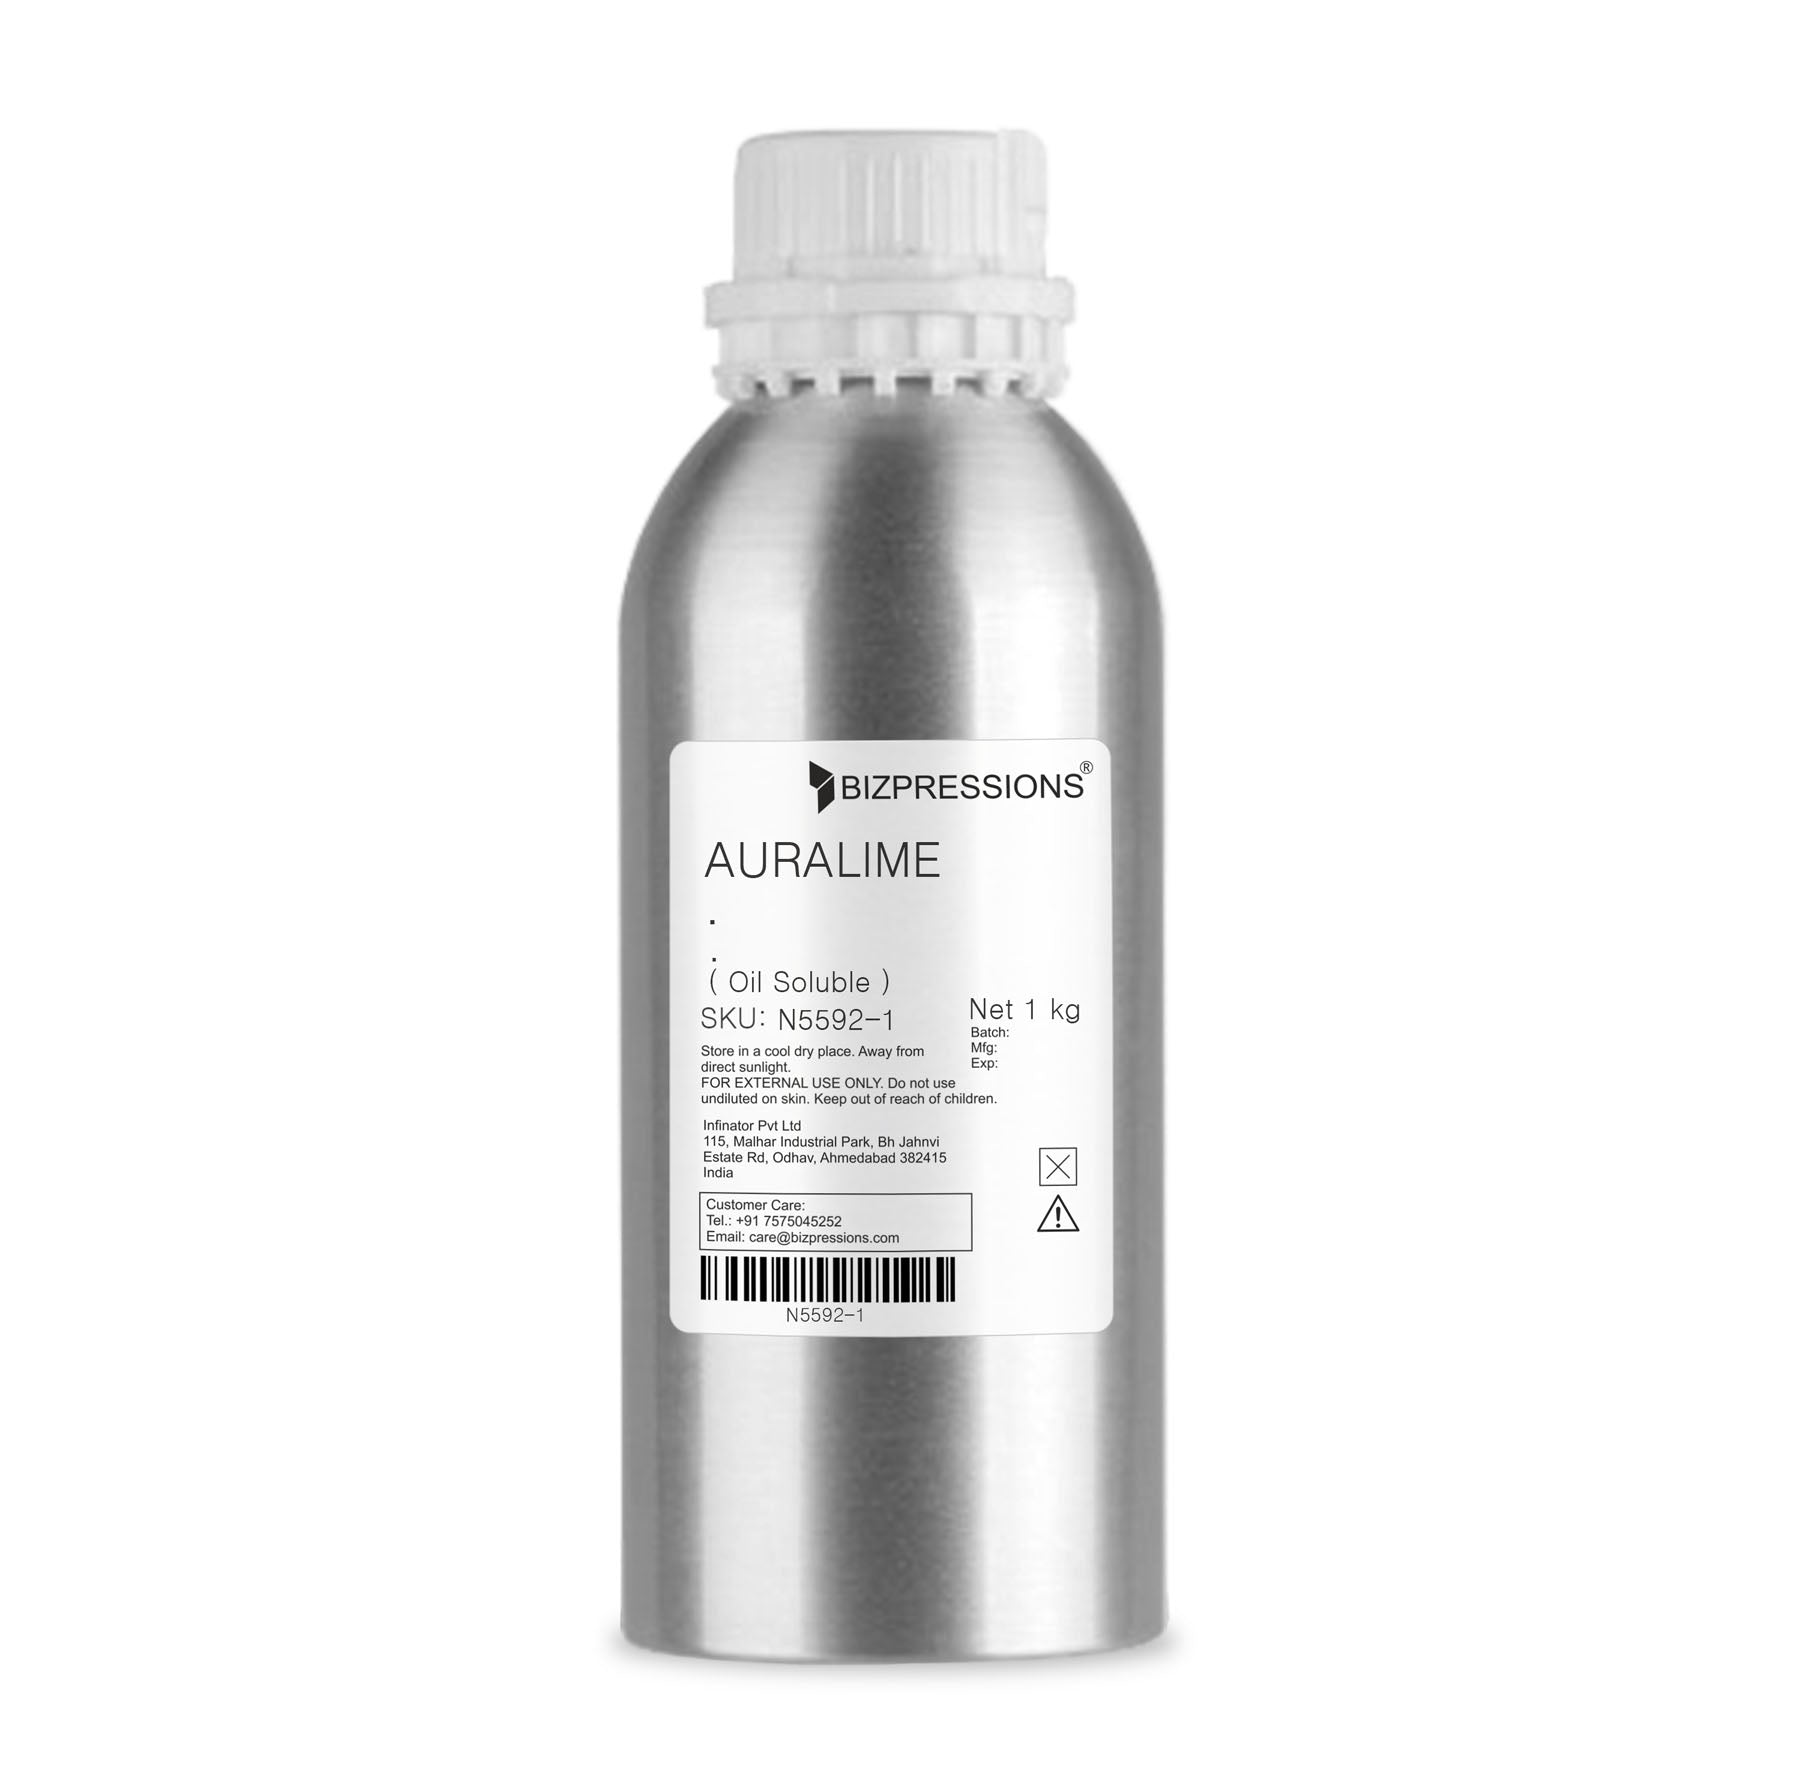 AURALIME - Fragrance ( Oil Soluble ) - 1 kg